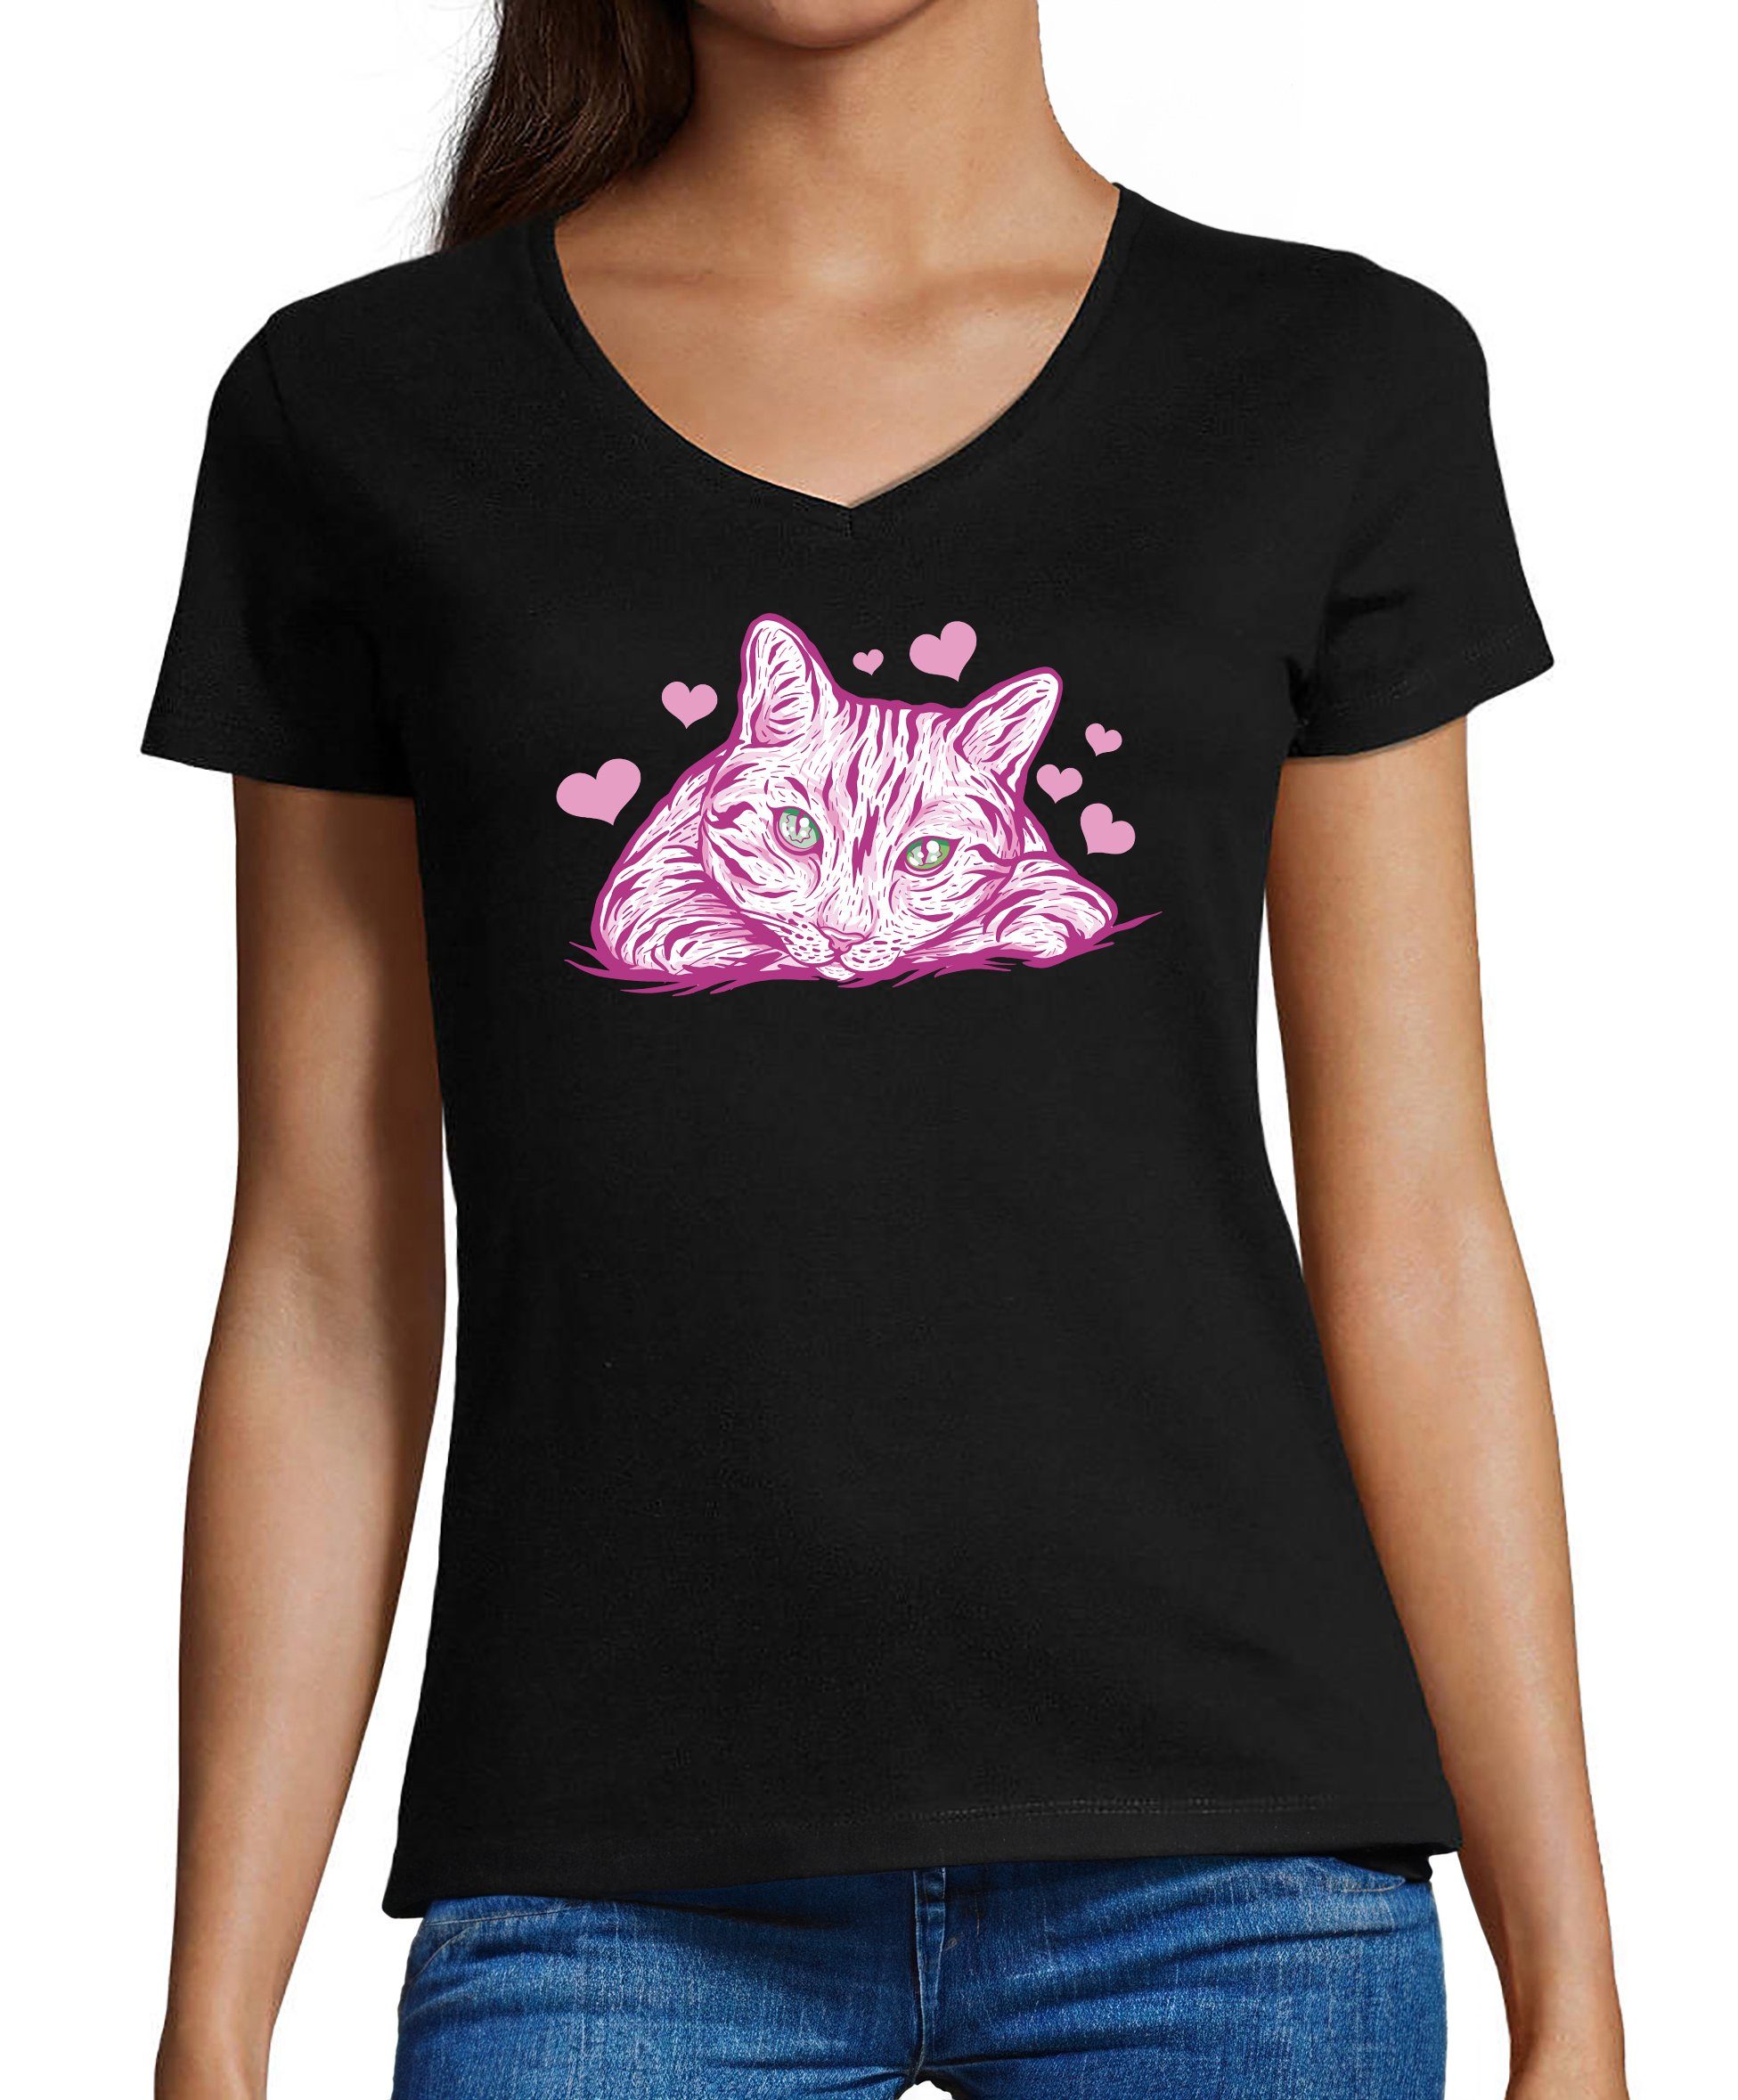 MyDesign24 T-Shirt Damen Katzen Print Shirt bedruckt - Pinke Katze mit Herzen Baumwollshirt mit Aufdruck, Slim Fit, i122 schwarz